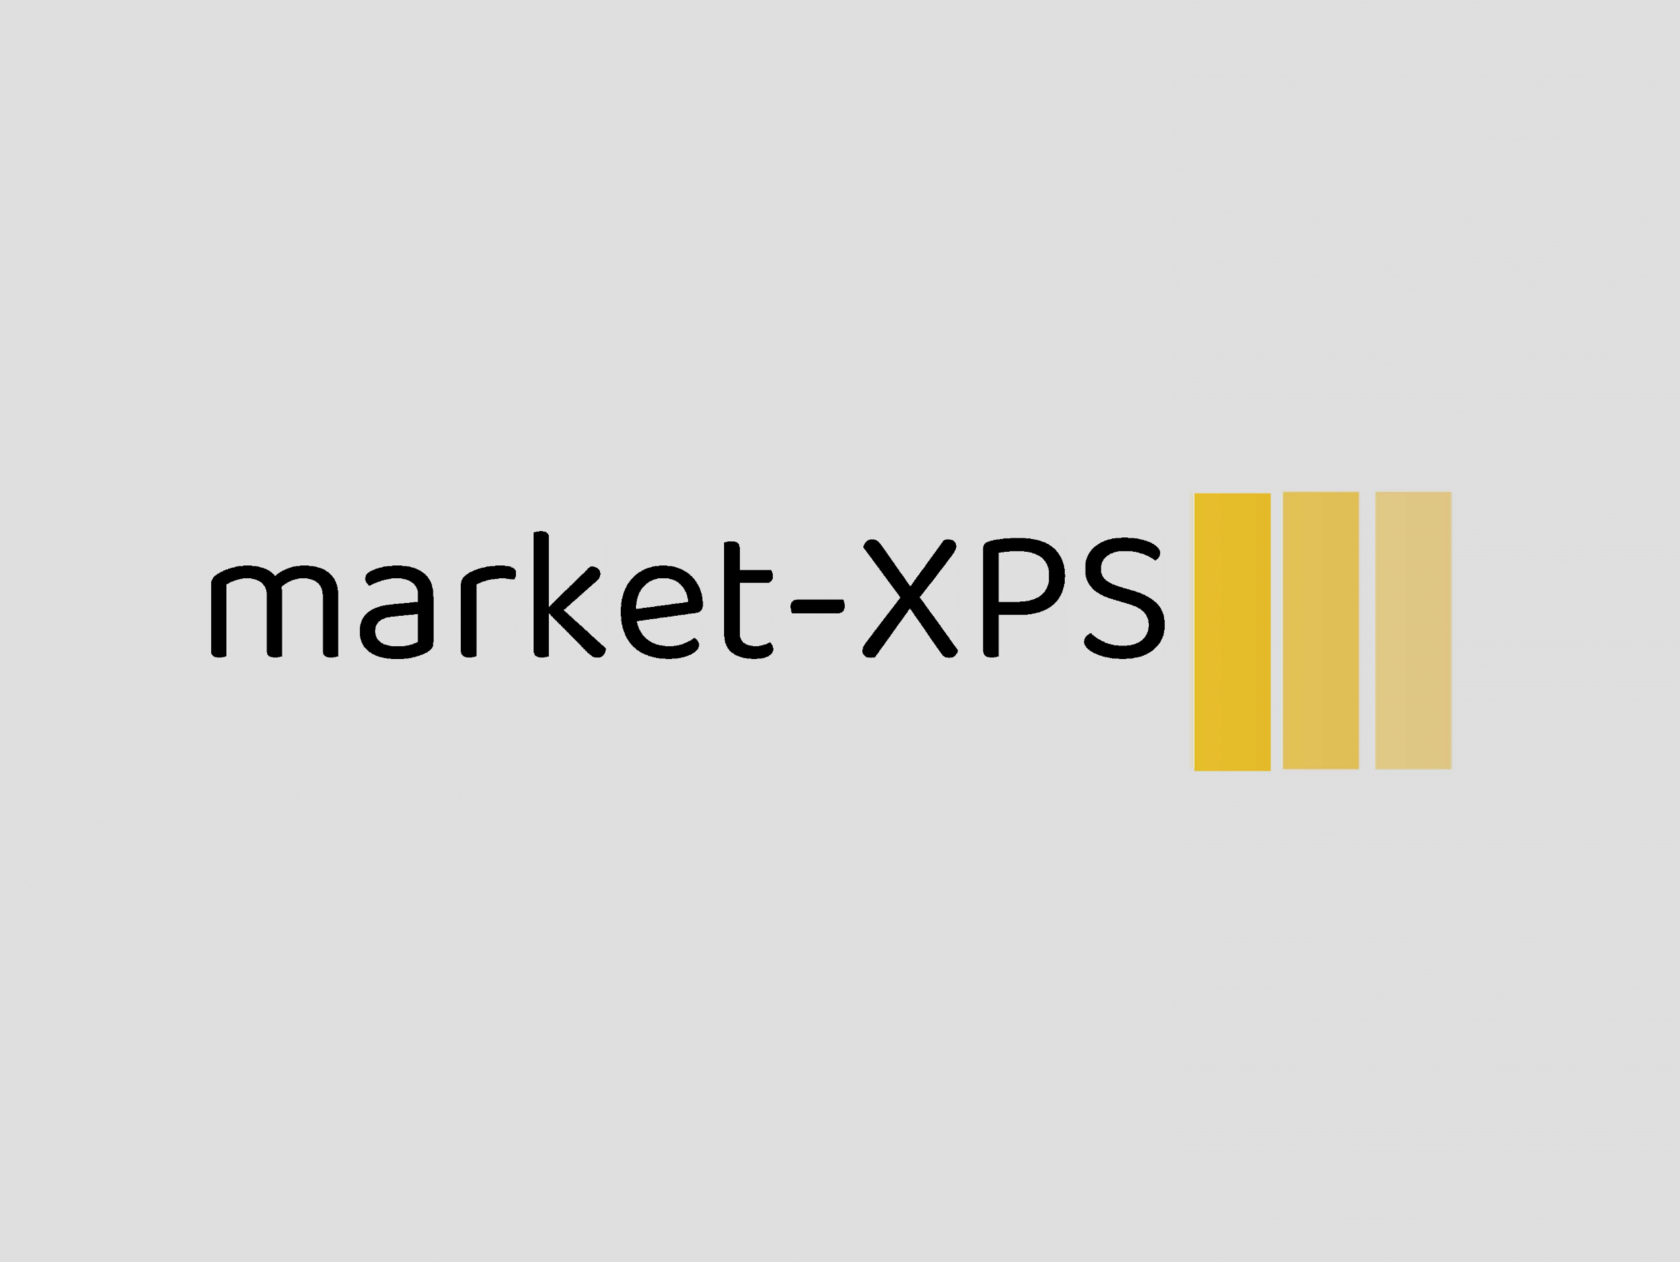 market-XPS на теплой стороне комфорта с материалами производства ТехноНИКОЛЬ